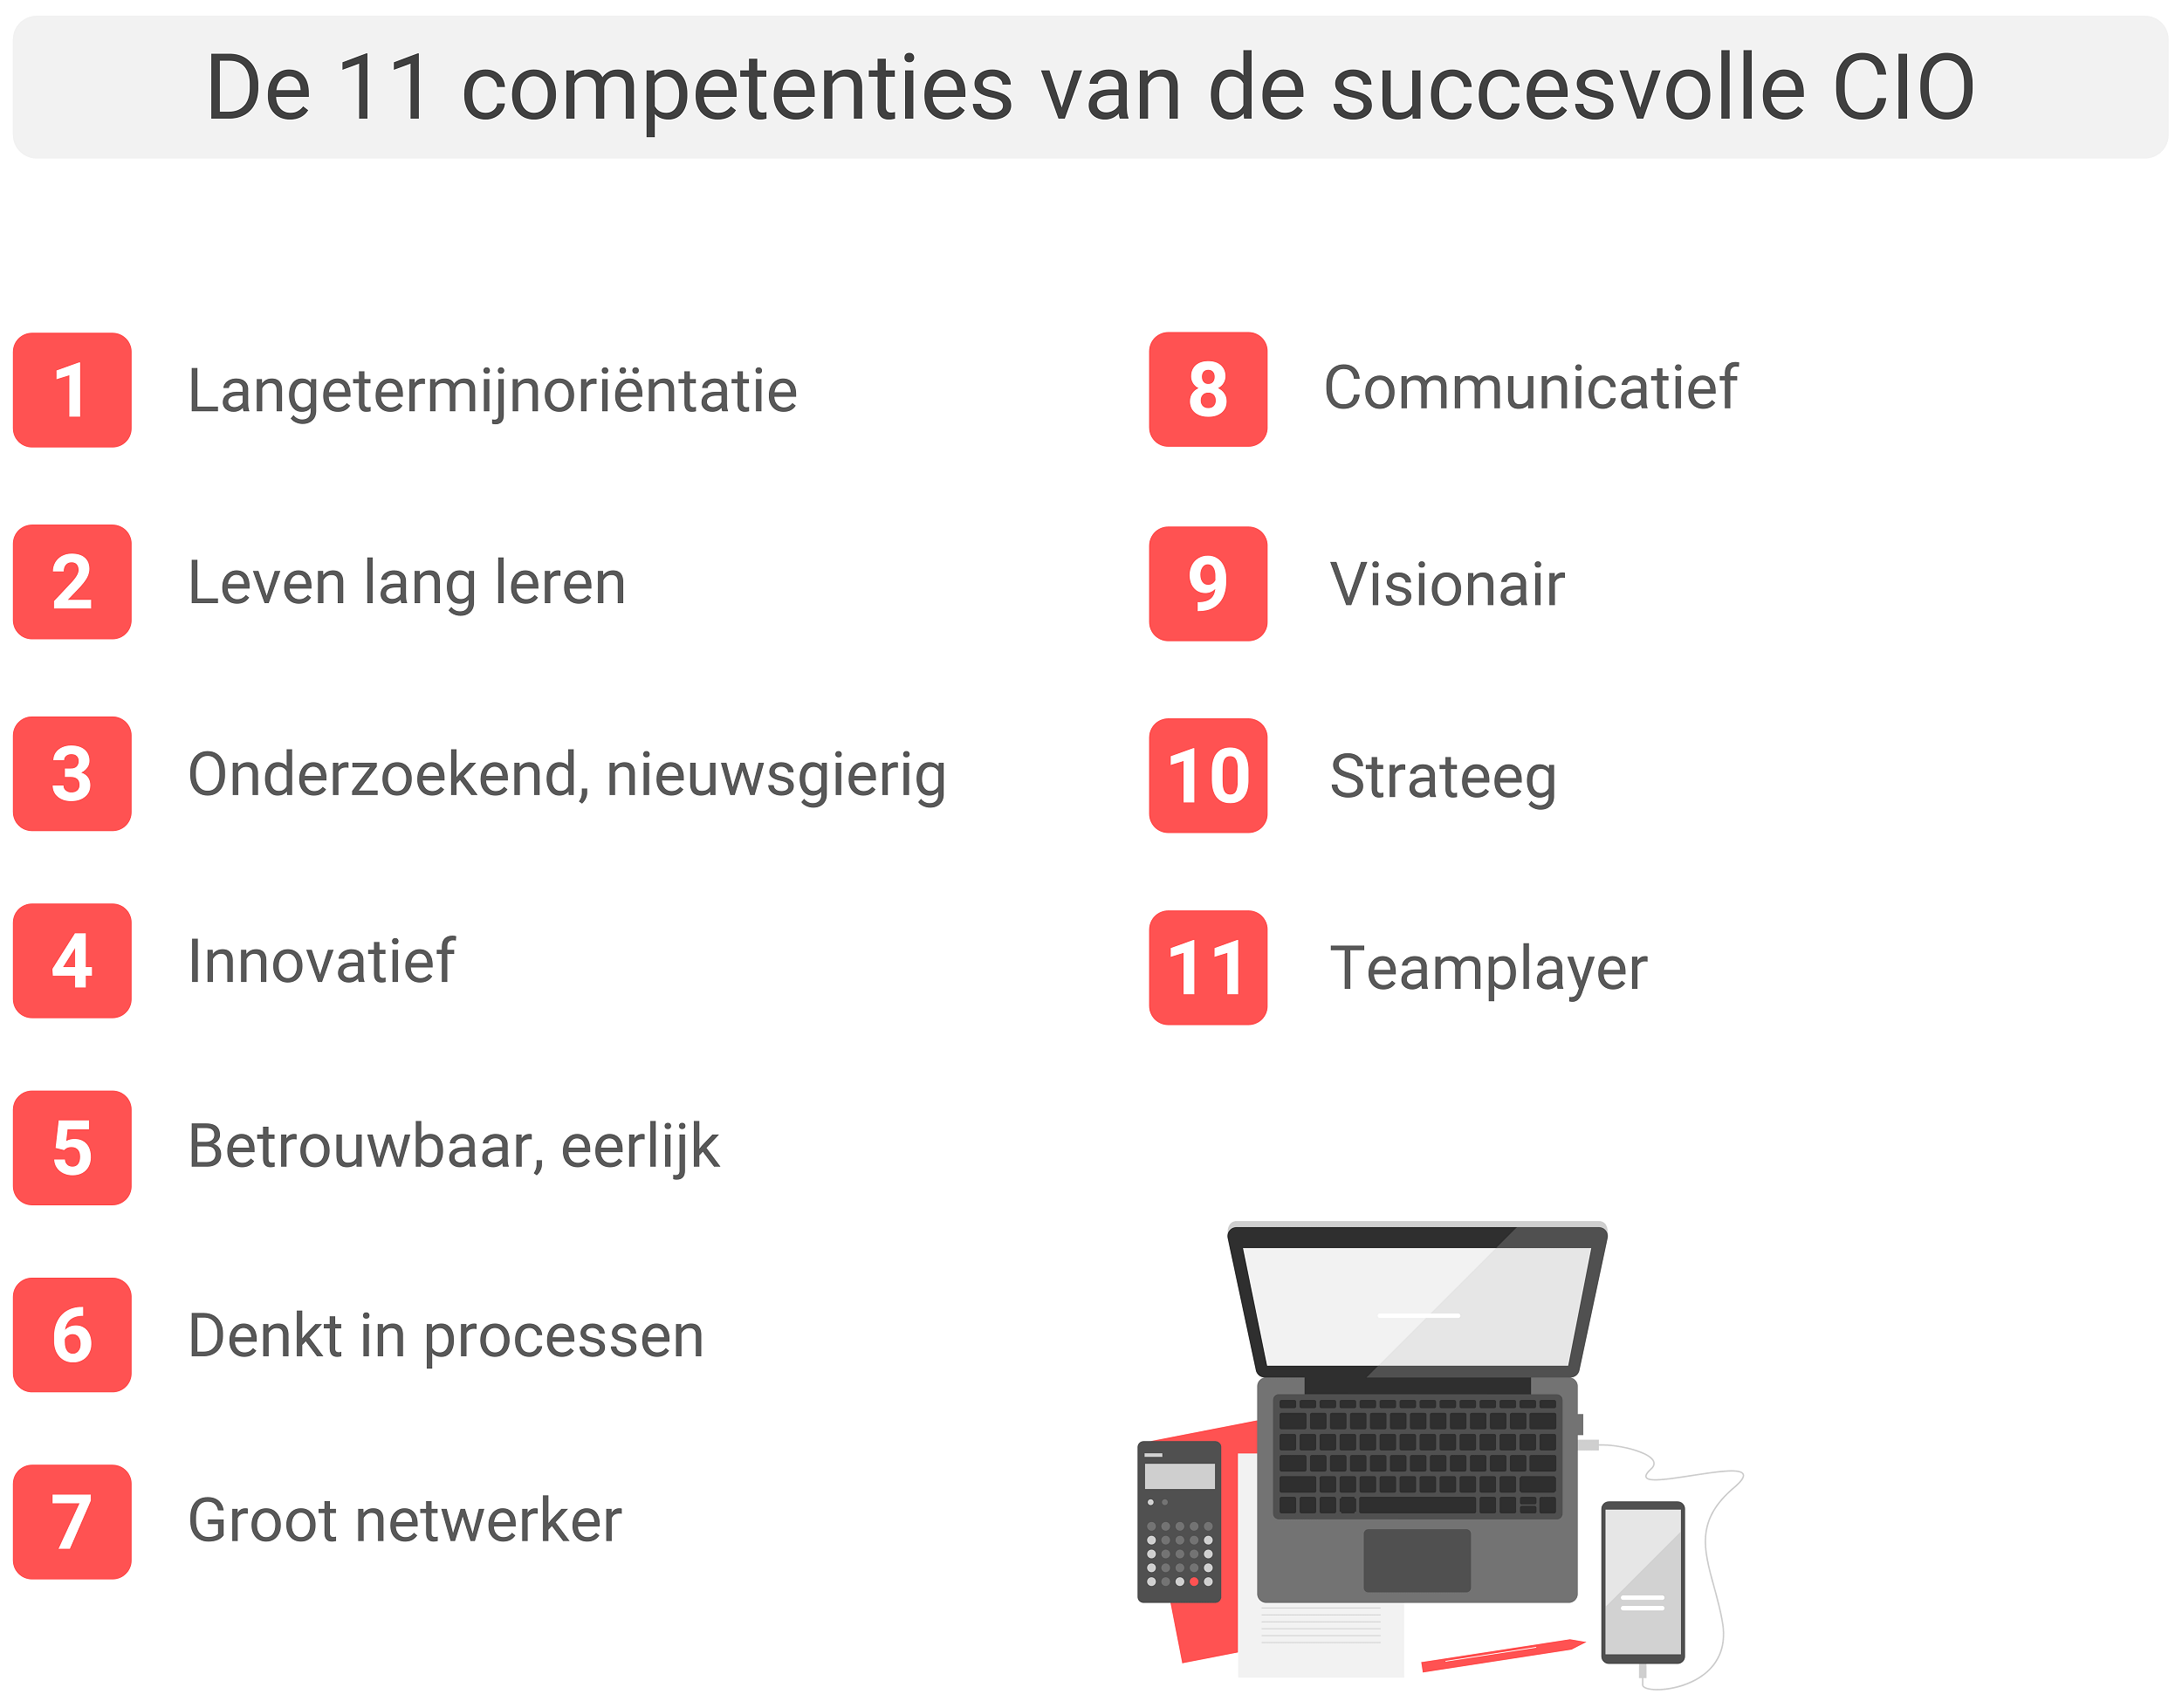 De 11 belangrijkste competenties van de succesvolle CIO.